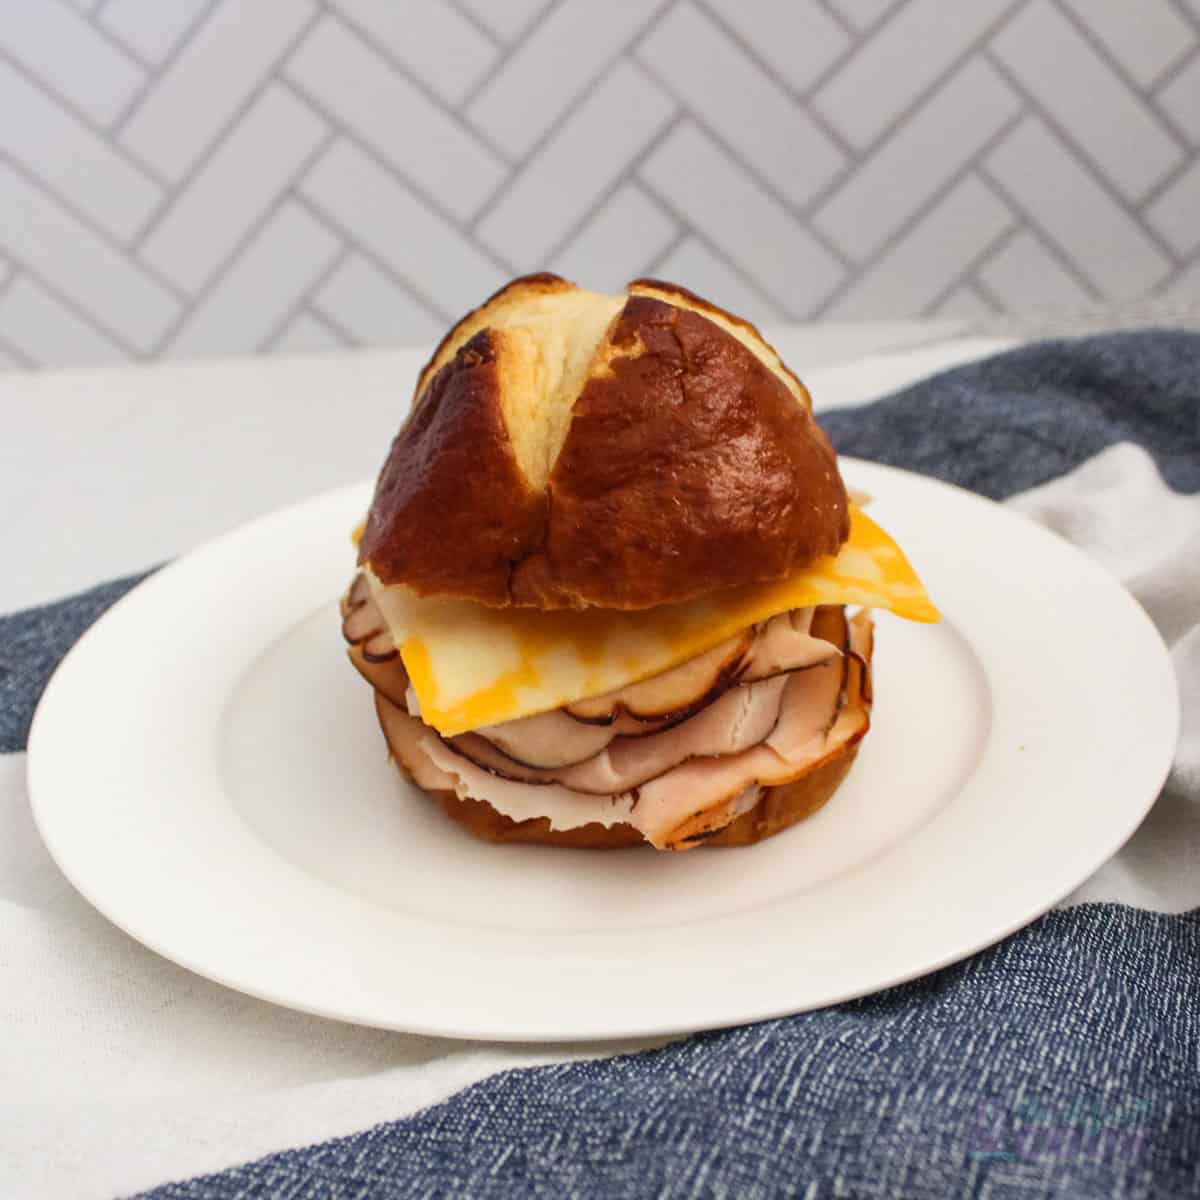 Pretzel Bun Sandwich with Deli Turkey and Cheese